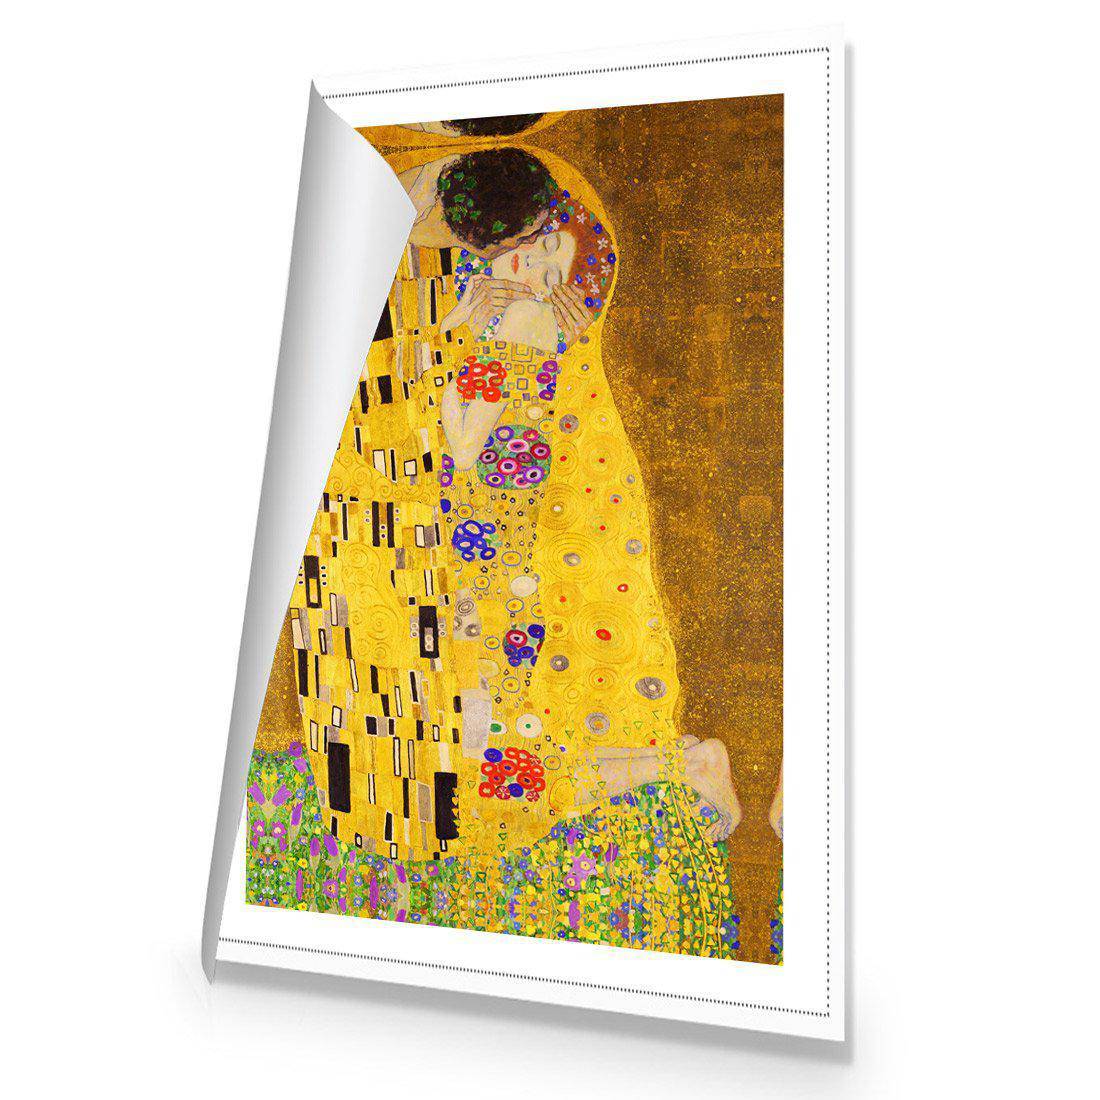 The Kiss by Klimt Canvas Art-Canvas-Wall Art Designs-45x30cm-Rolled Canvas-Wall Art Designs